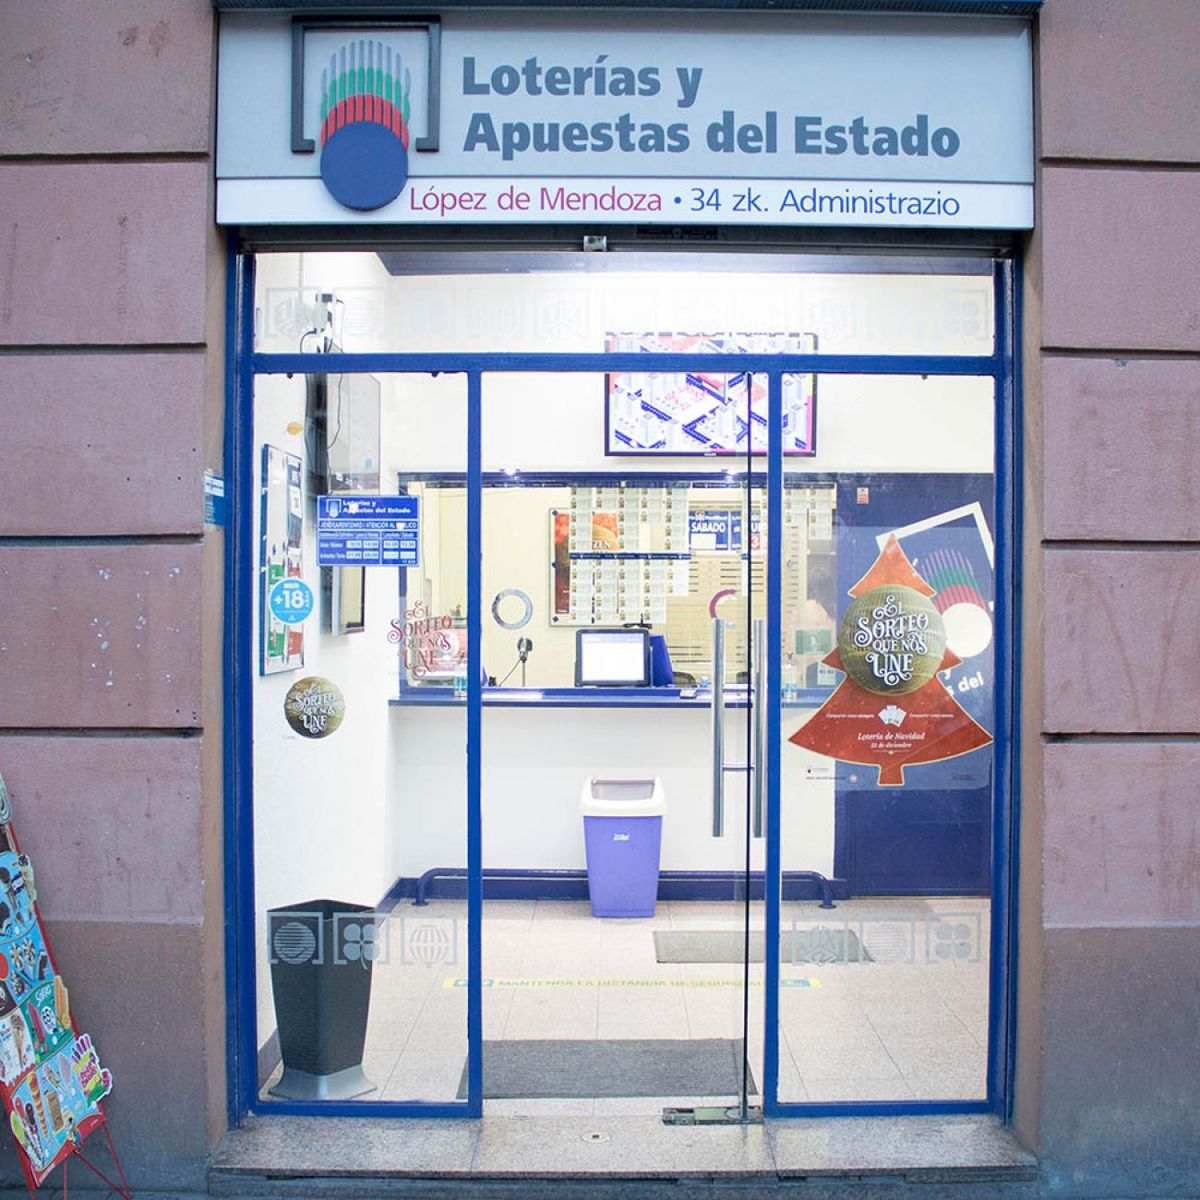 Loterias Lopez de Mendoza en Bilbao